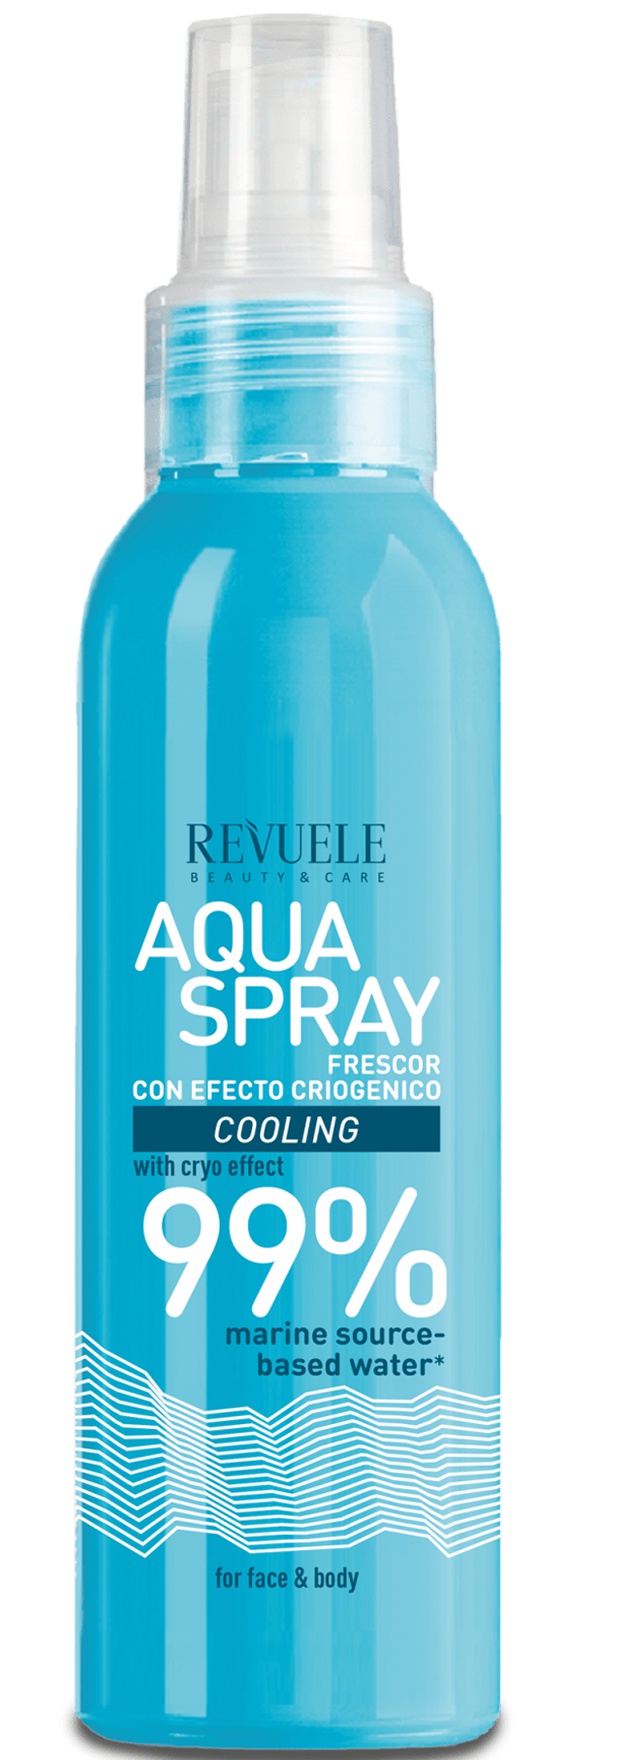 Revuele Aqua Spray Cooling